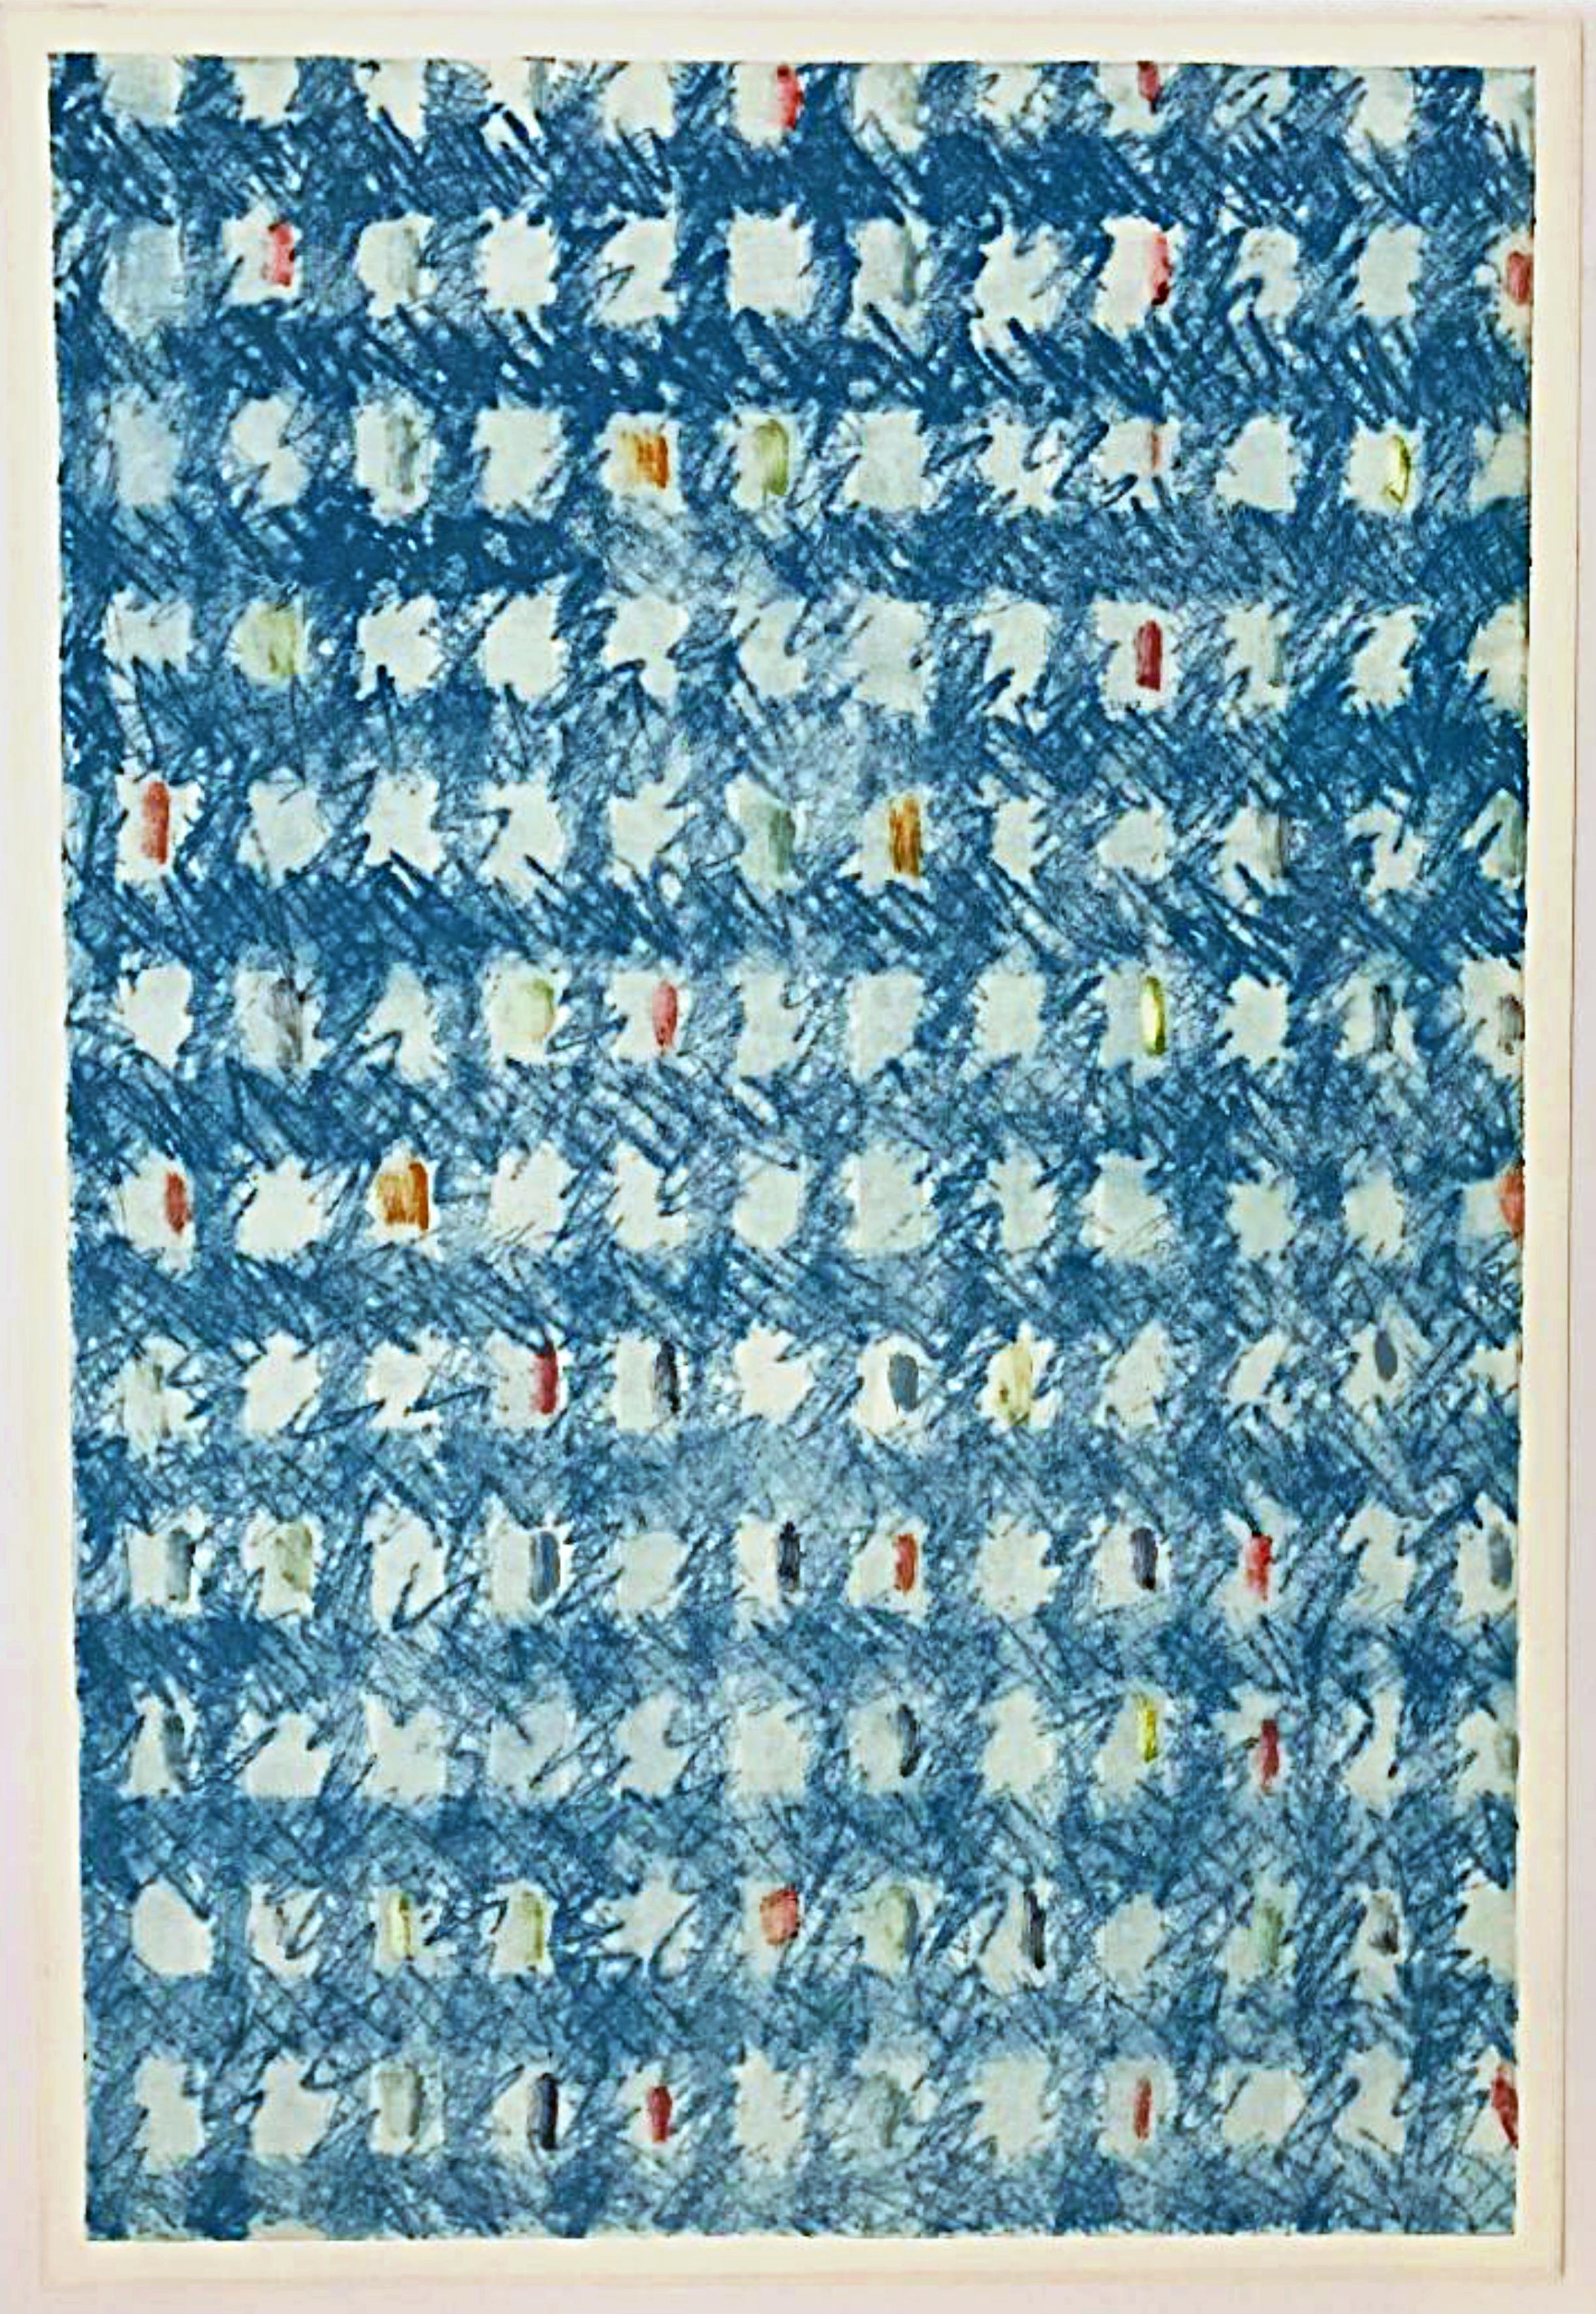 Monotype et abstraction géométrique peint à la main par un artiste renommé dans le domaine des couleurs - Art de Kenneth Noland